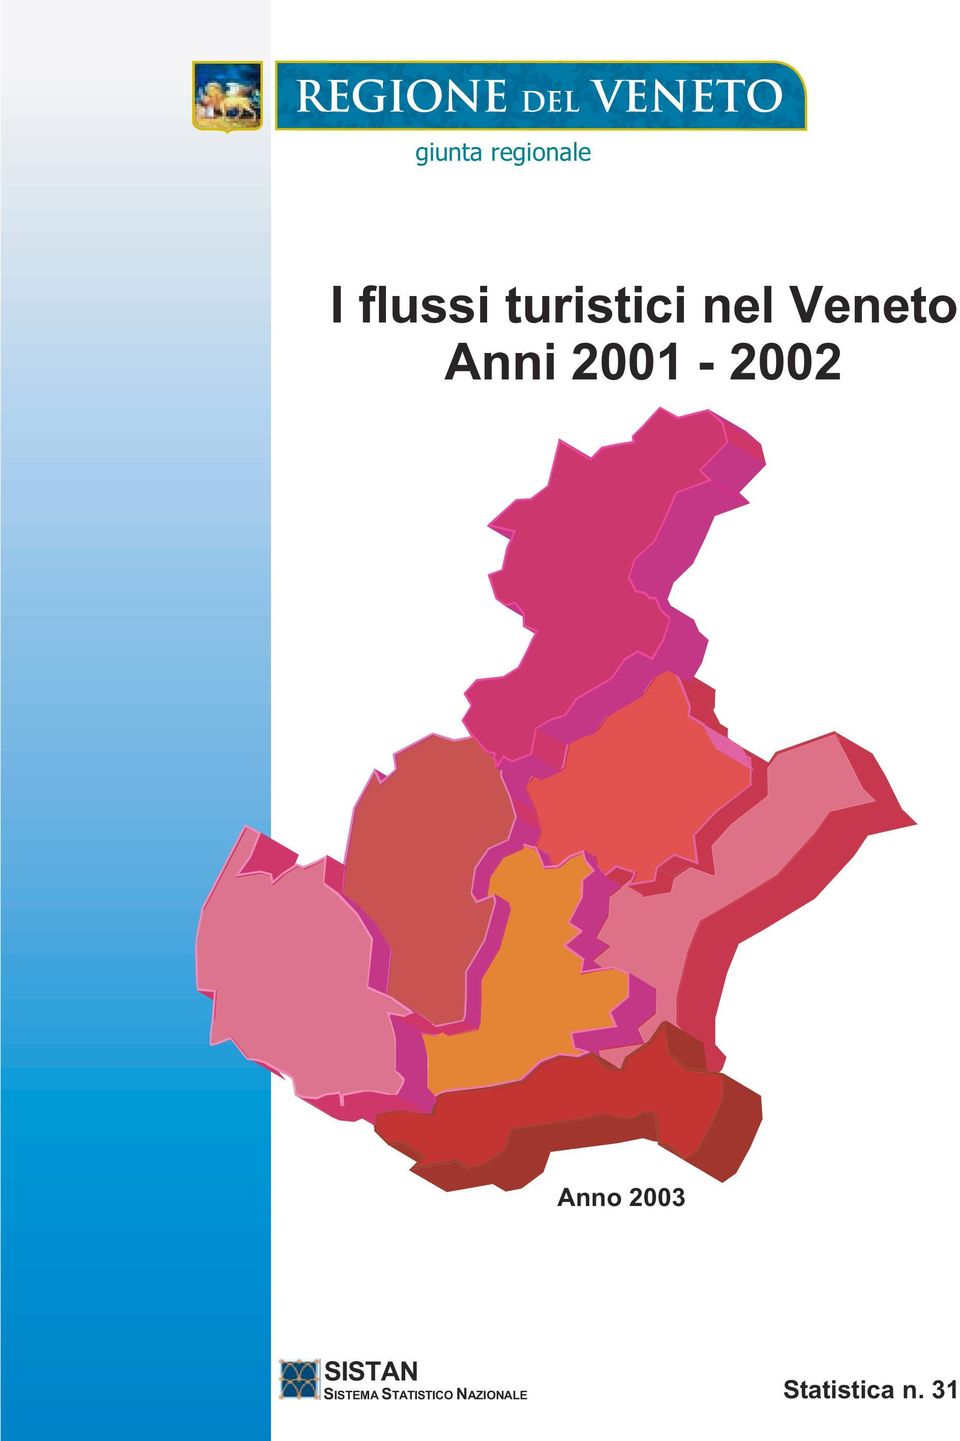 2001-2002 Anno 2003 SISTAN